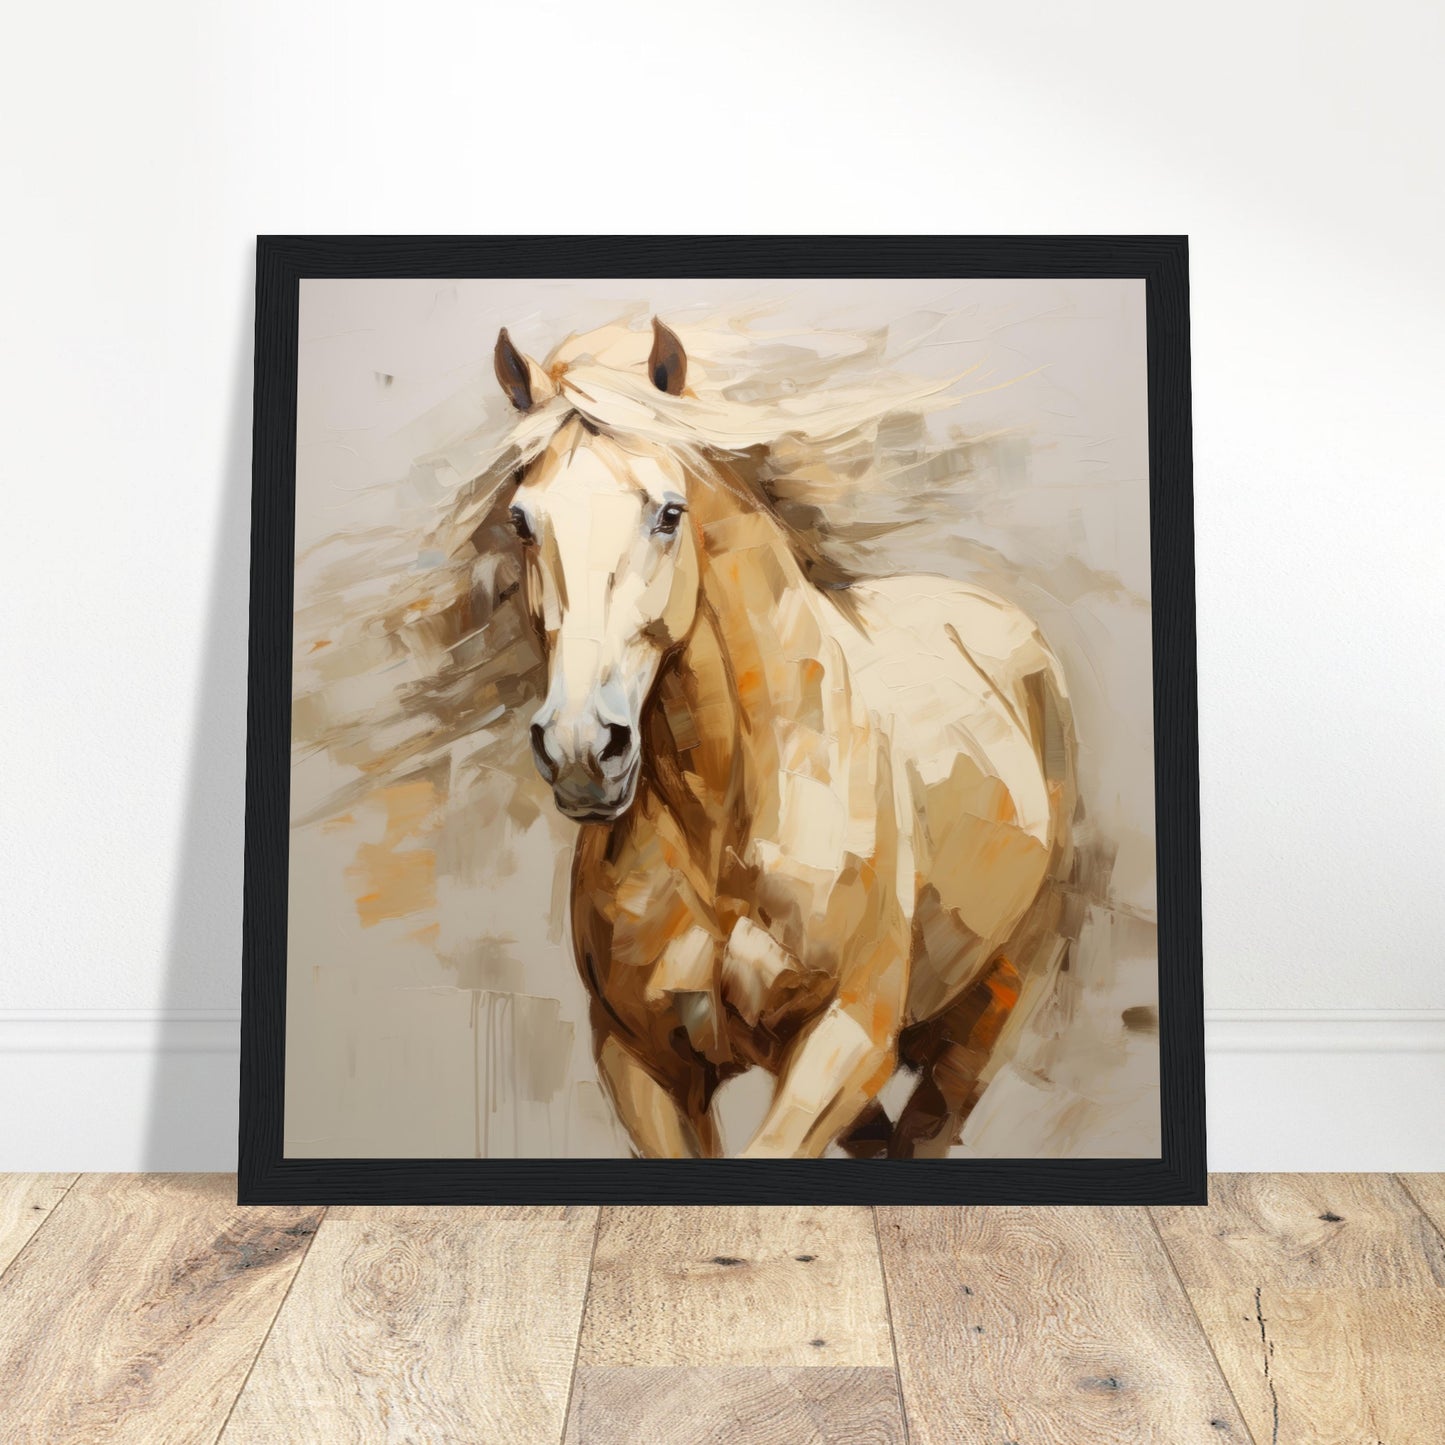 Equine Artwork #04 - Print Room Ltd White frame 30x30 cm / 12x12"